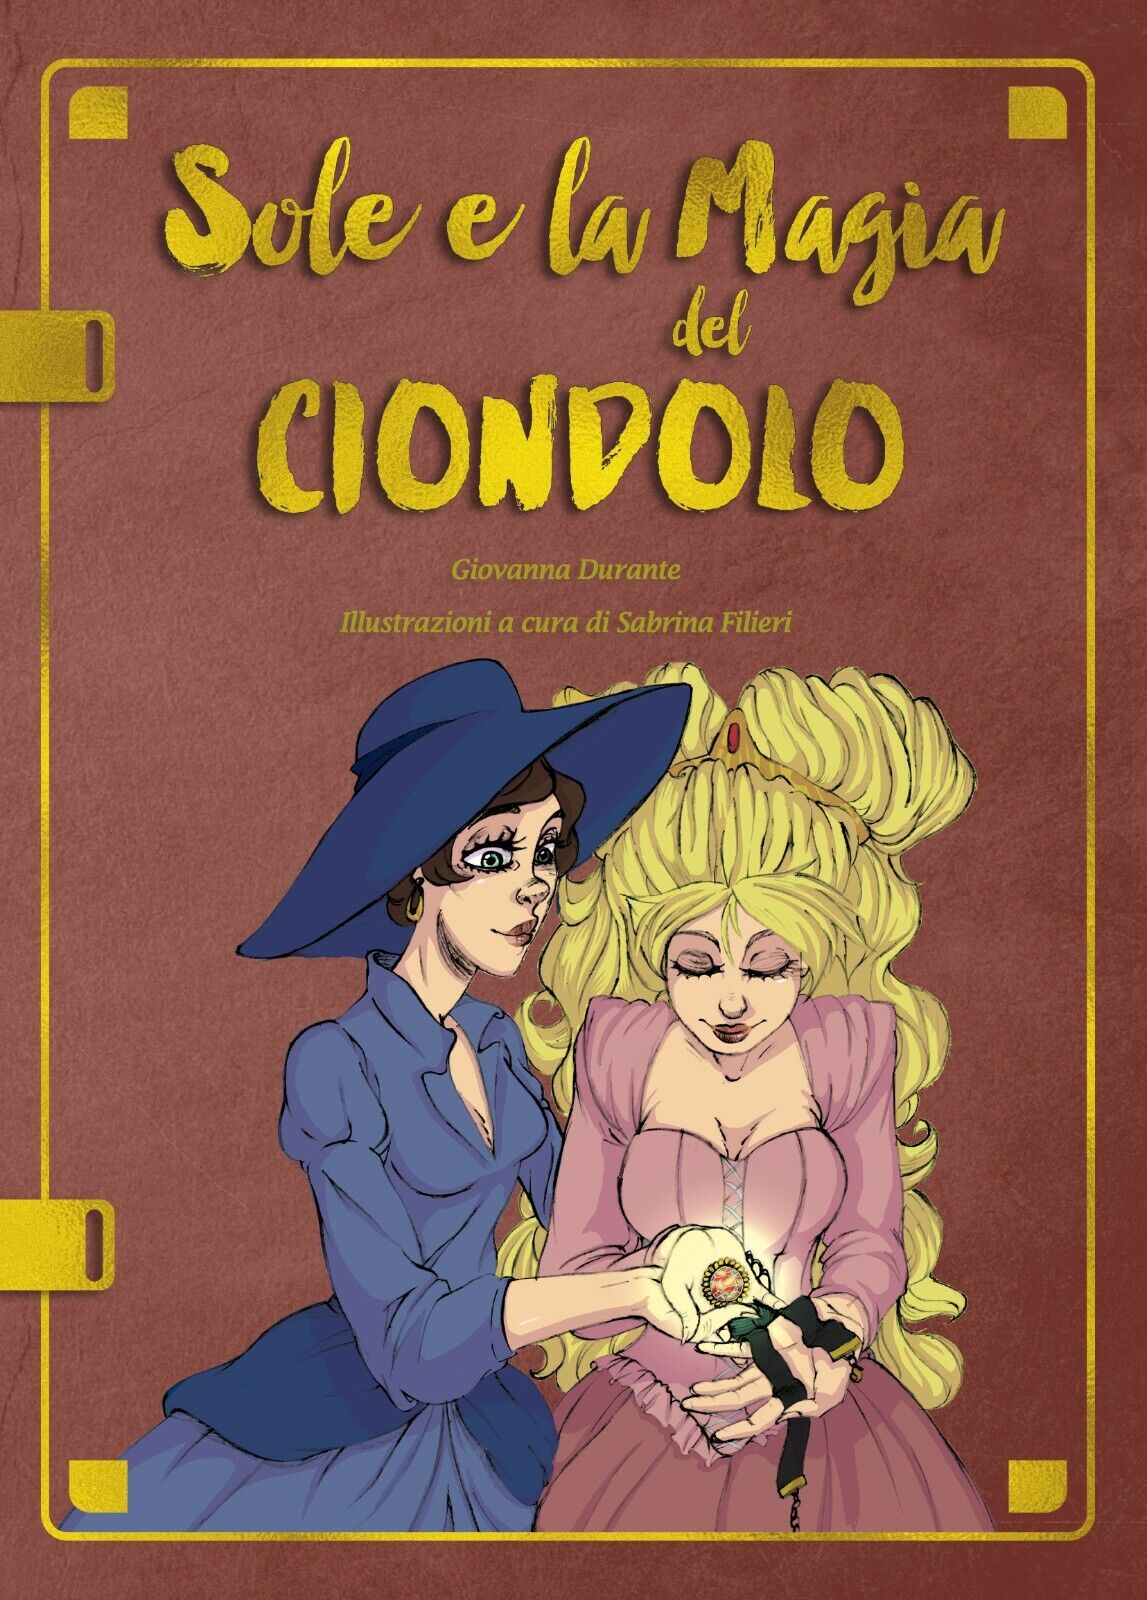 Sole e la magia del Ciondolo - Giovanna Durante, S. Filieri,  2019,  Youcanprint